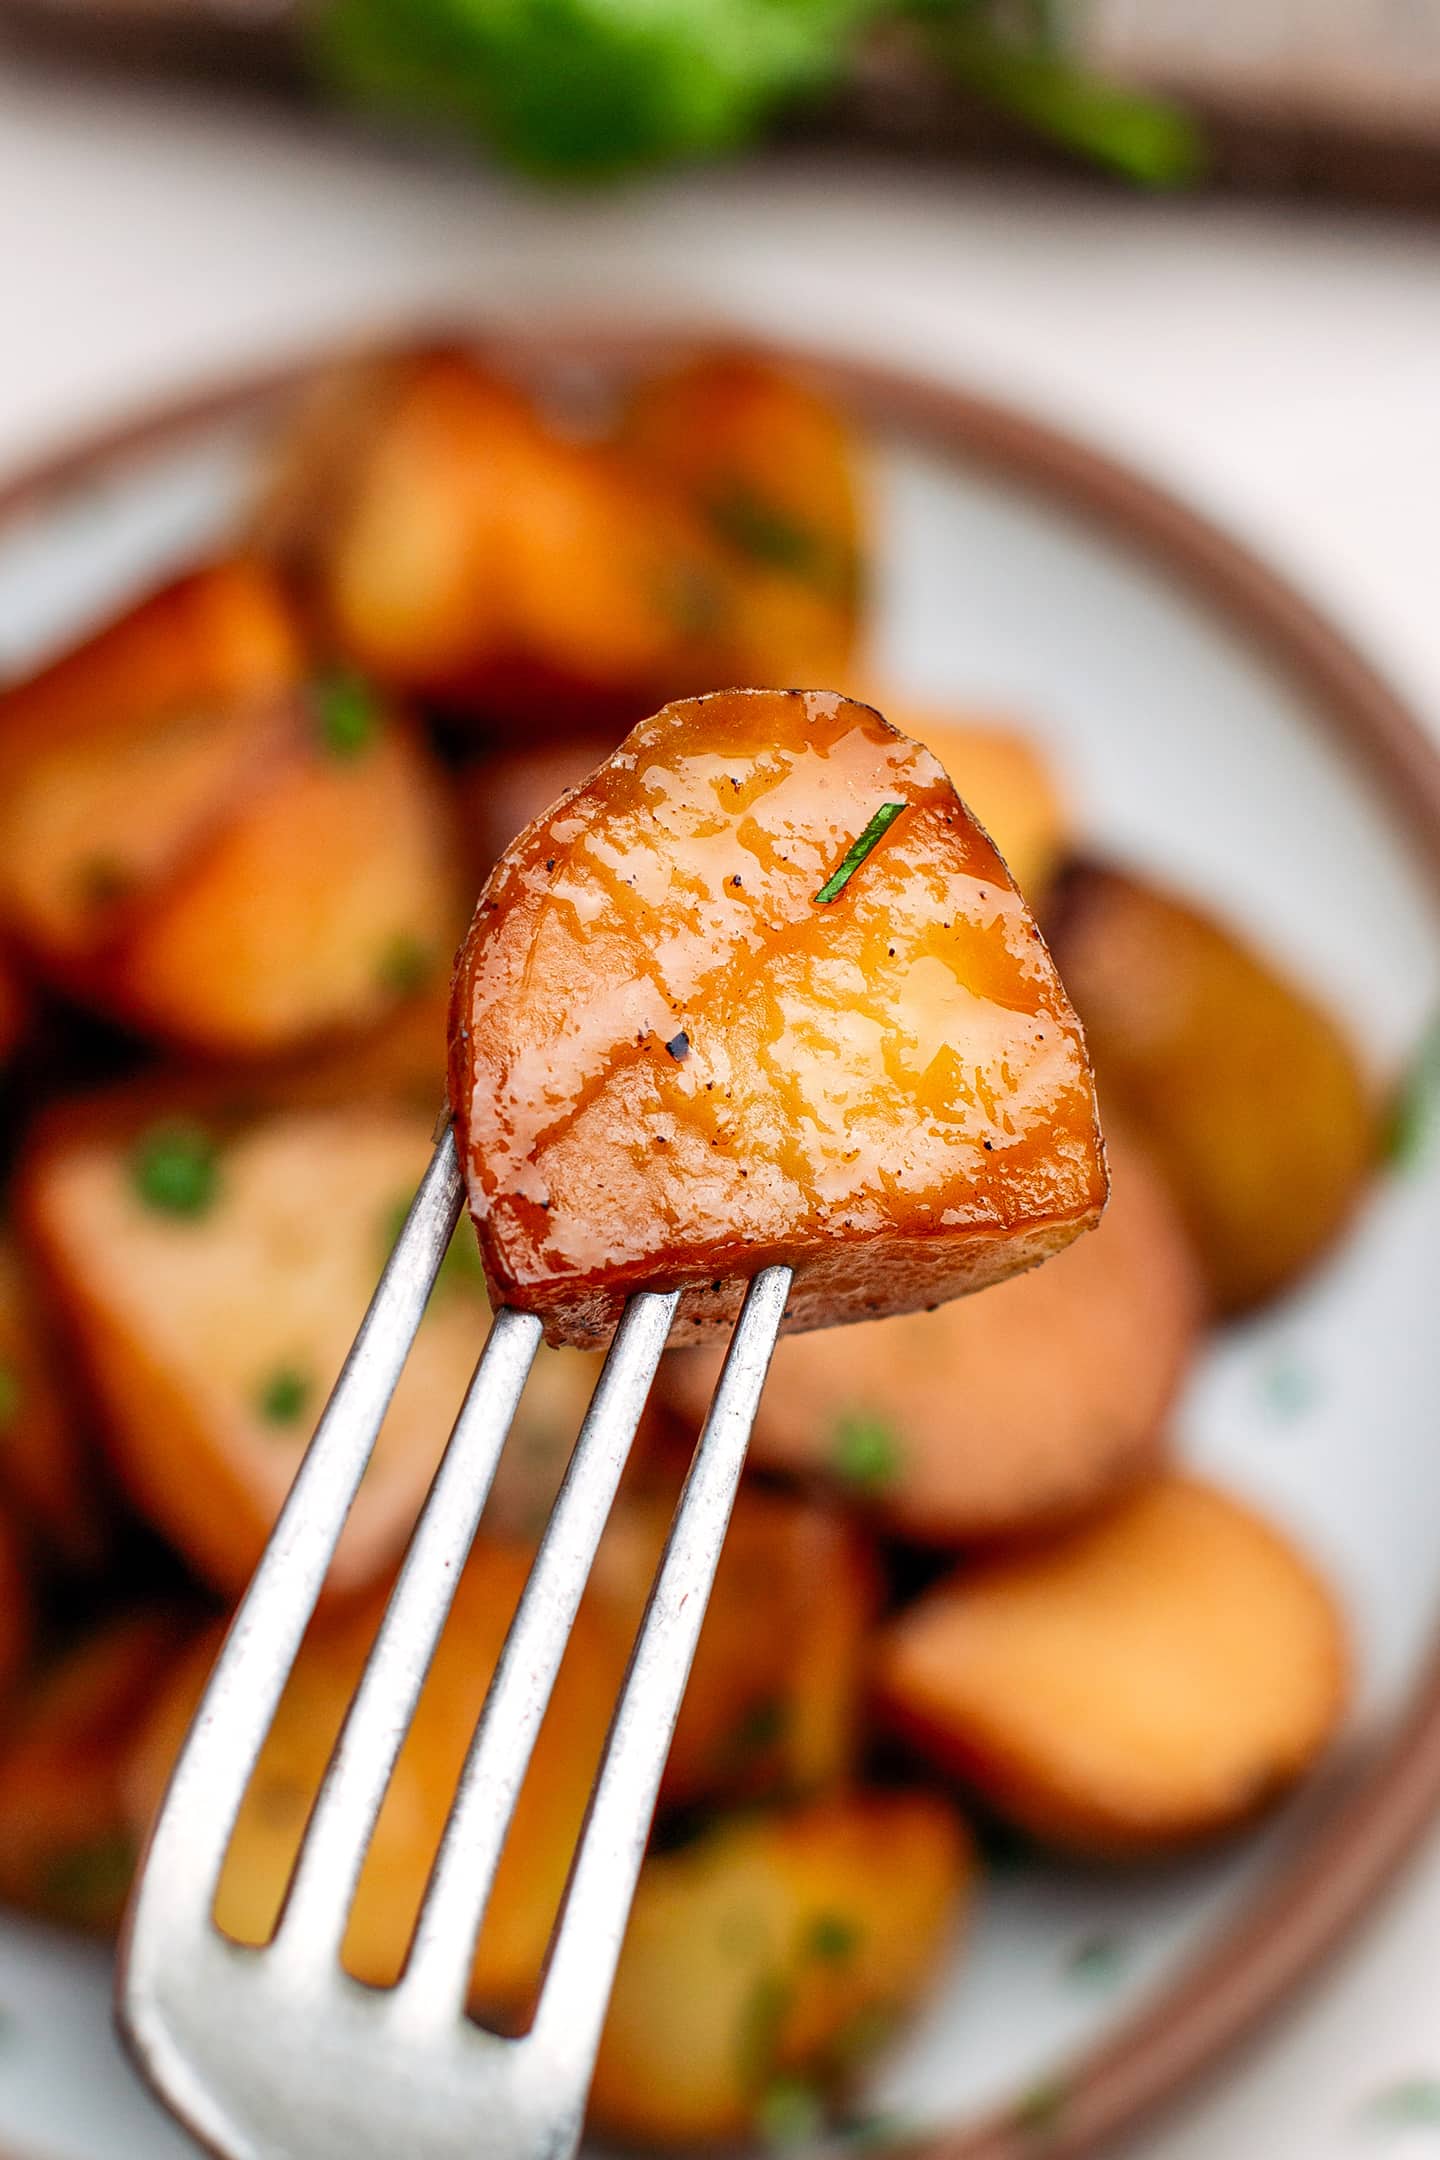 Close-up of a smoked potato.